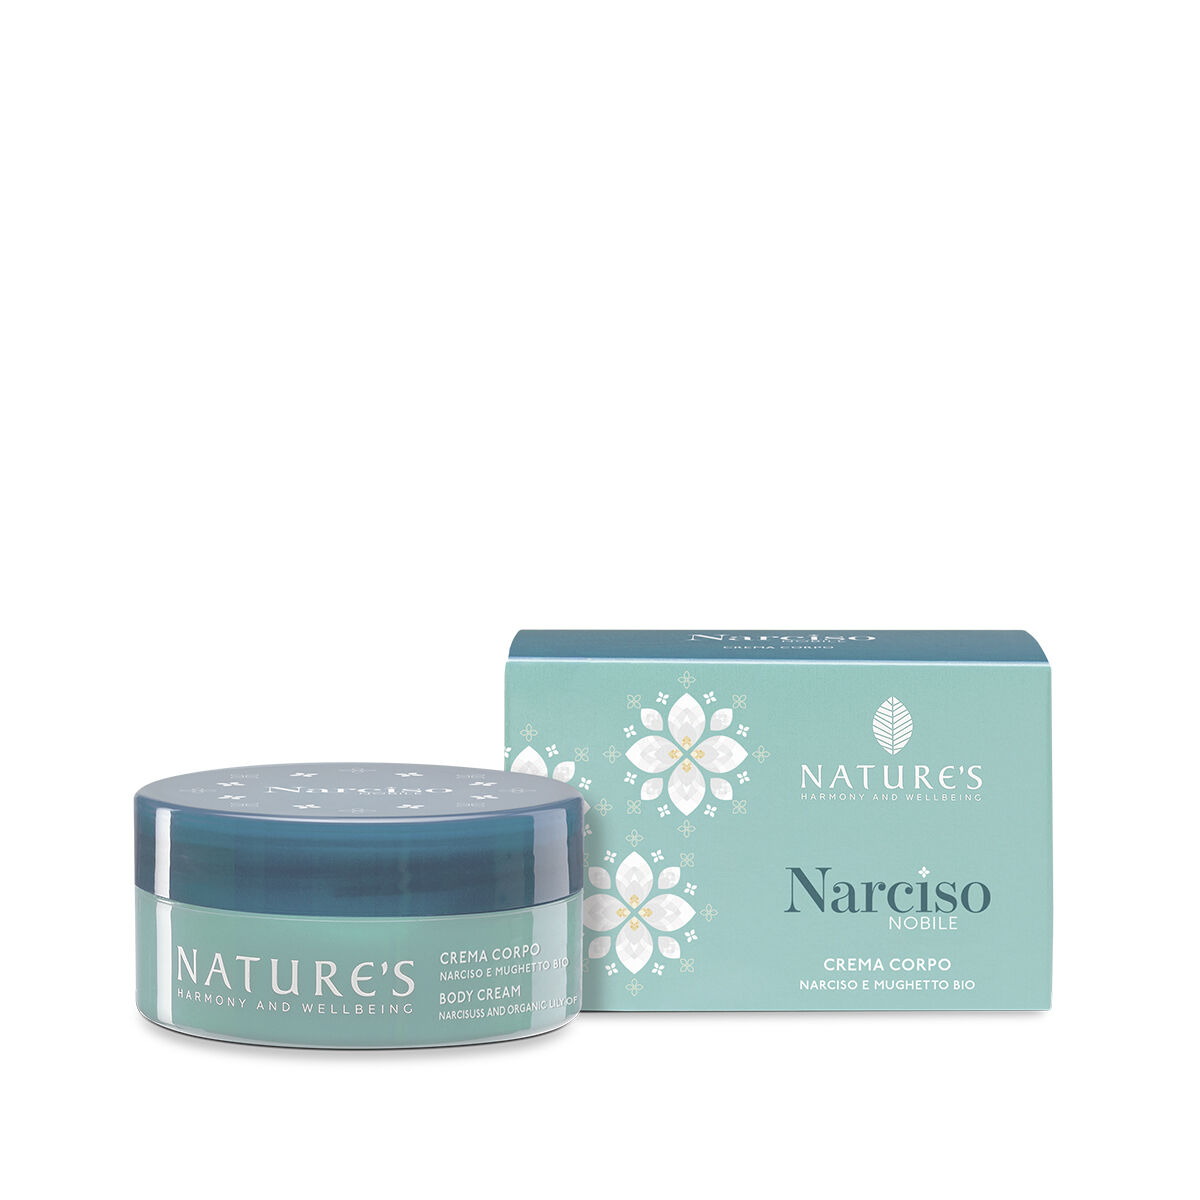 Nature's Narciso Nobile Crema Corpo 100 ml